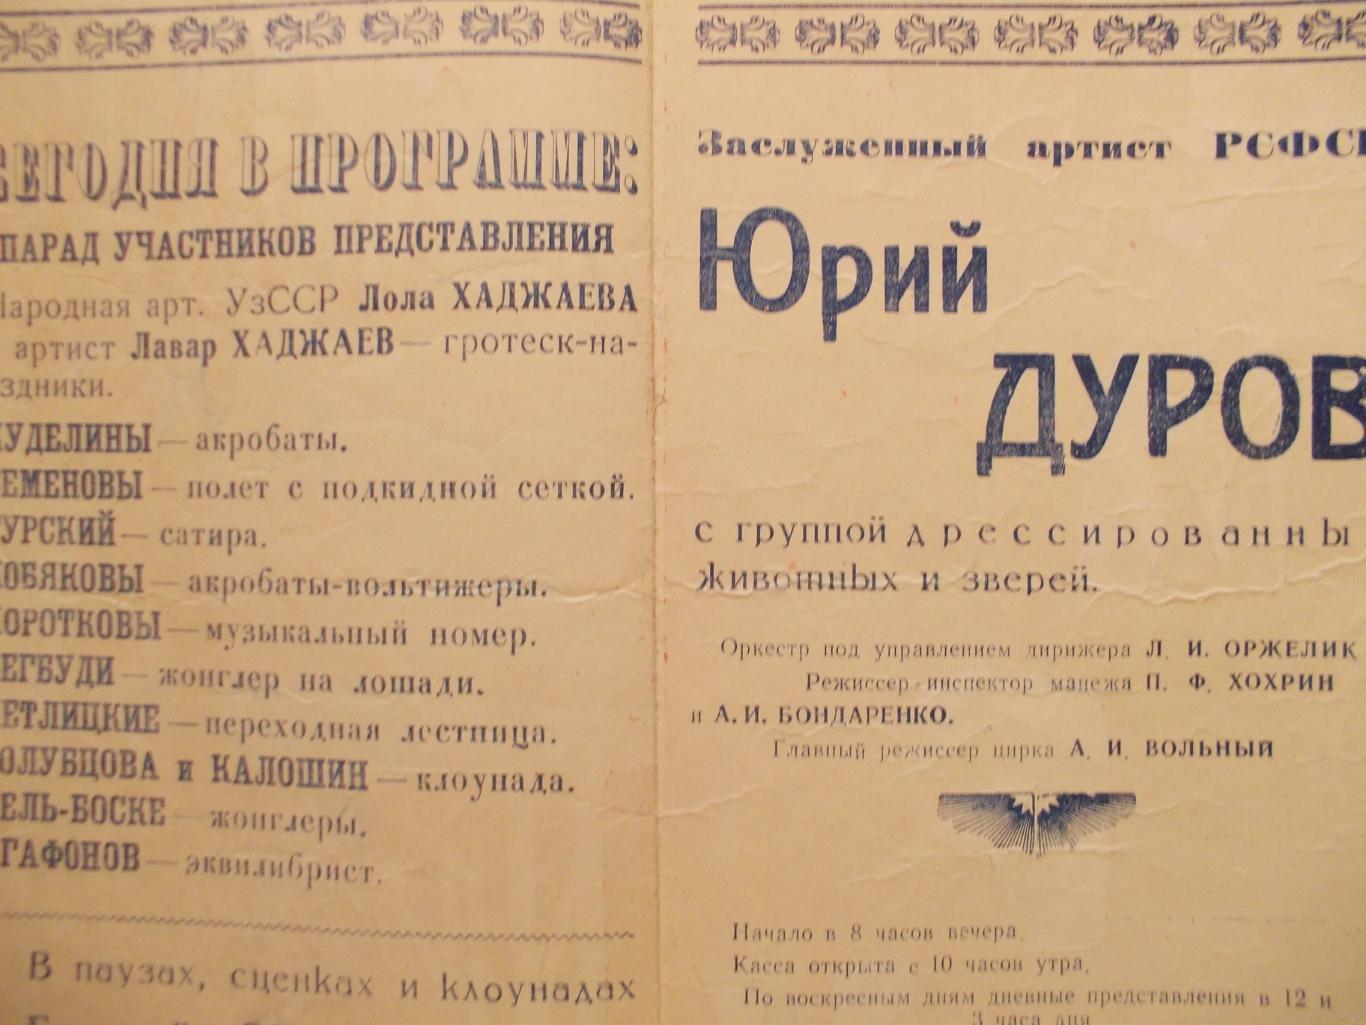 ПрограммаЦирк зверей Юрия Дурова в Омске 1962 год. 1